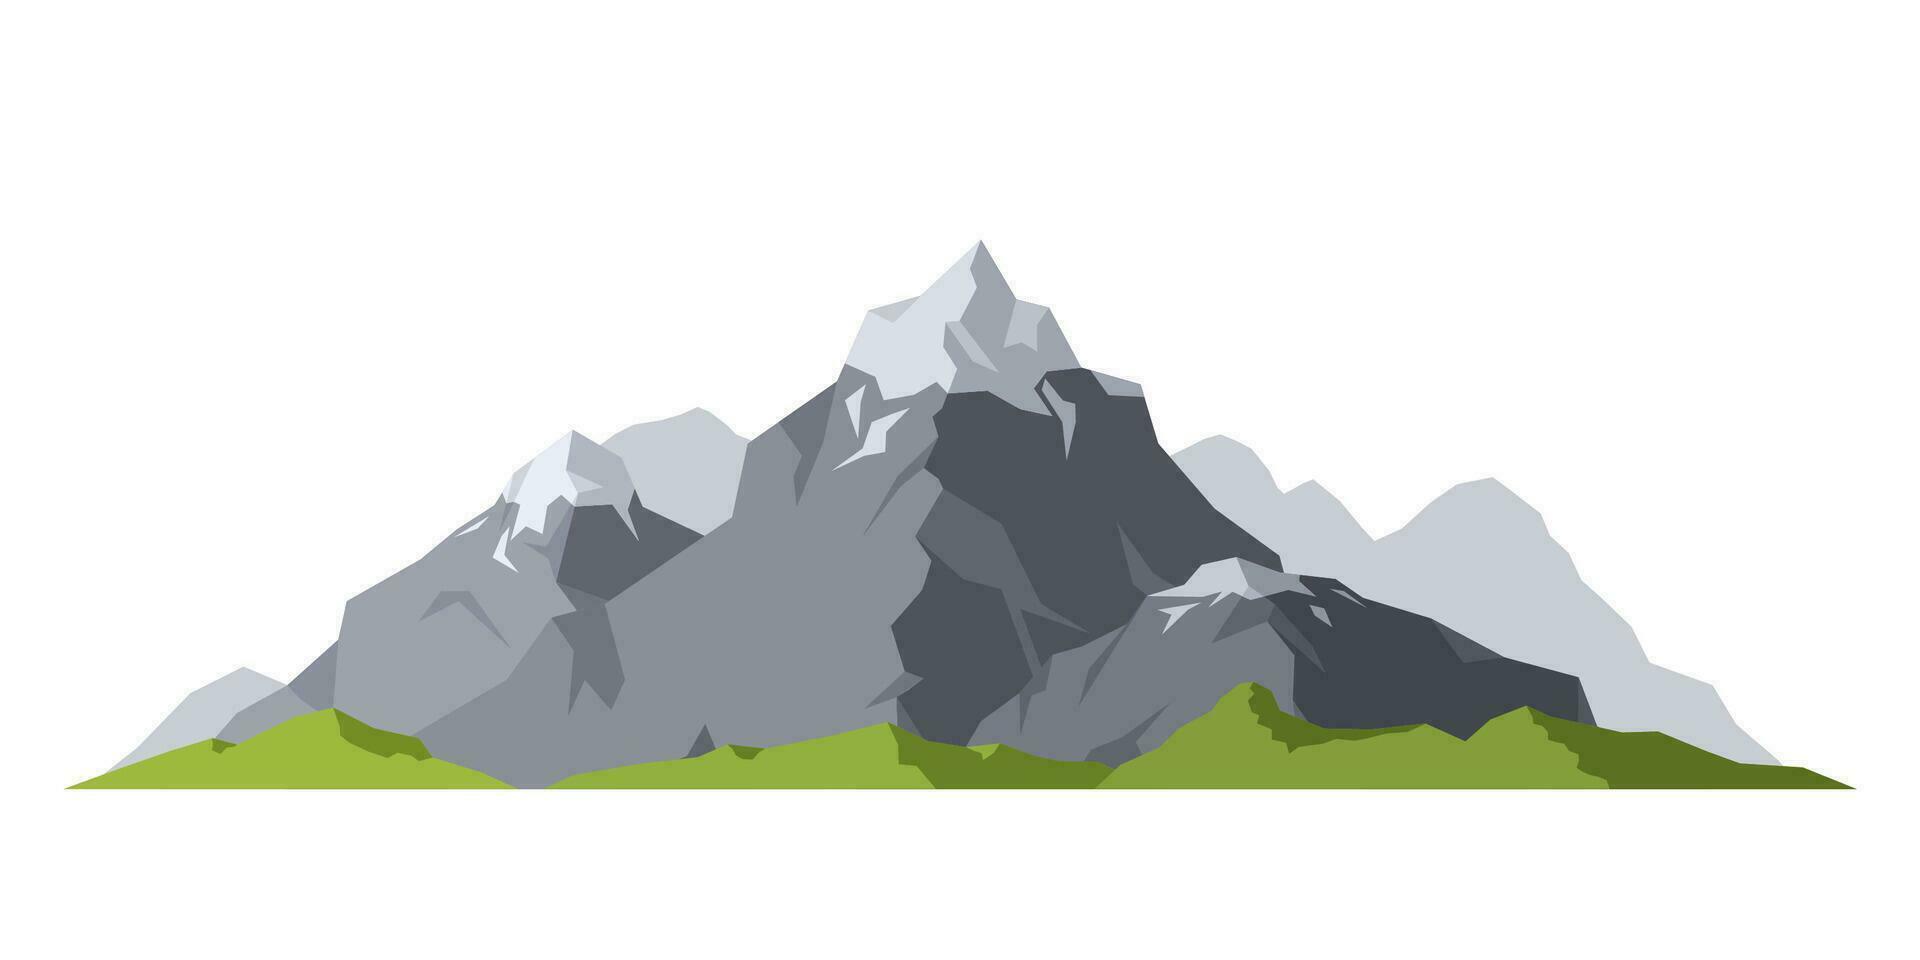 montanha maduro silhueta elemento ao ar livre neve gelo tops isolado em branco fundo, acampamento panorama viagem escalada ou caminhada geologia montanha. vetor ilustração.